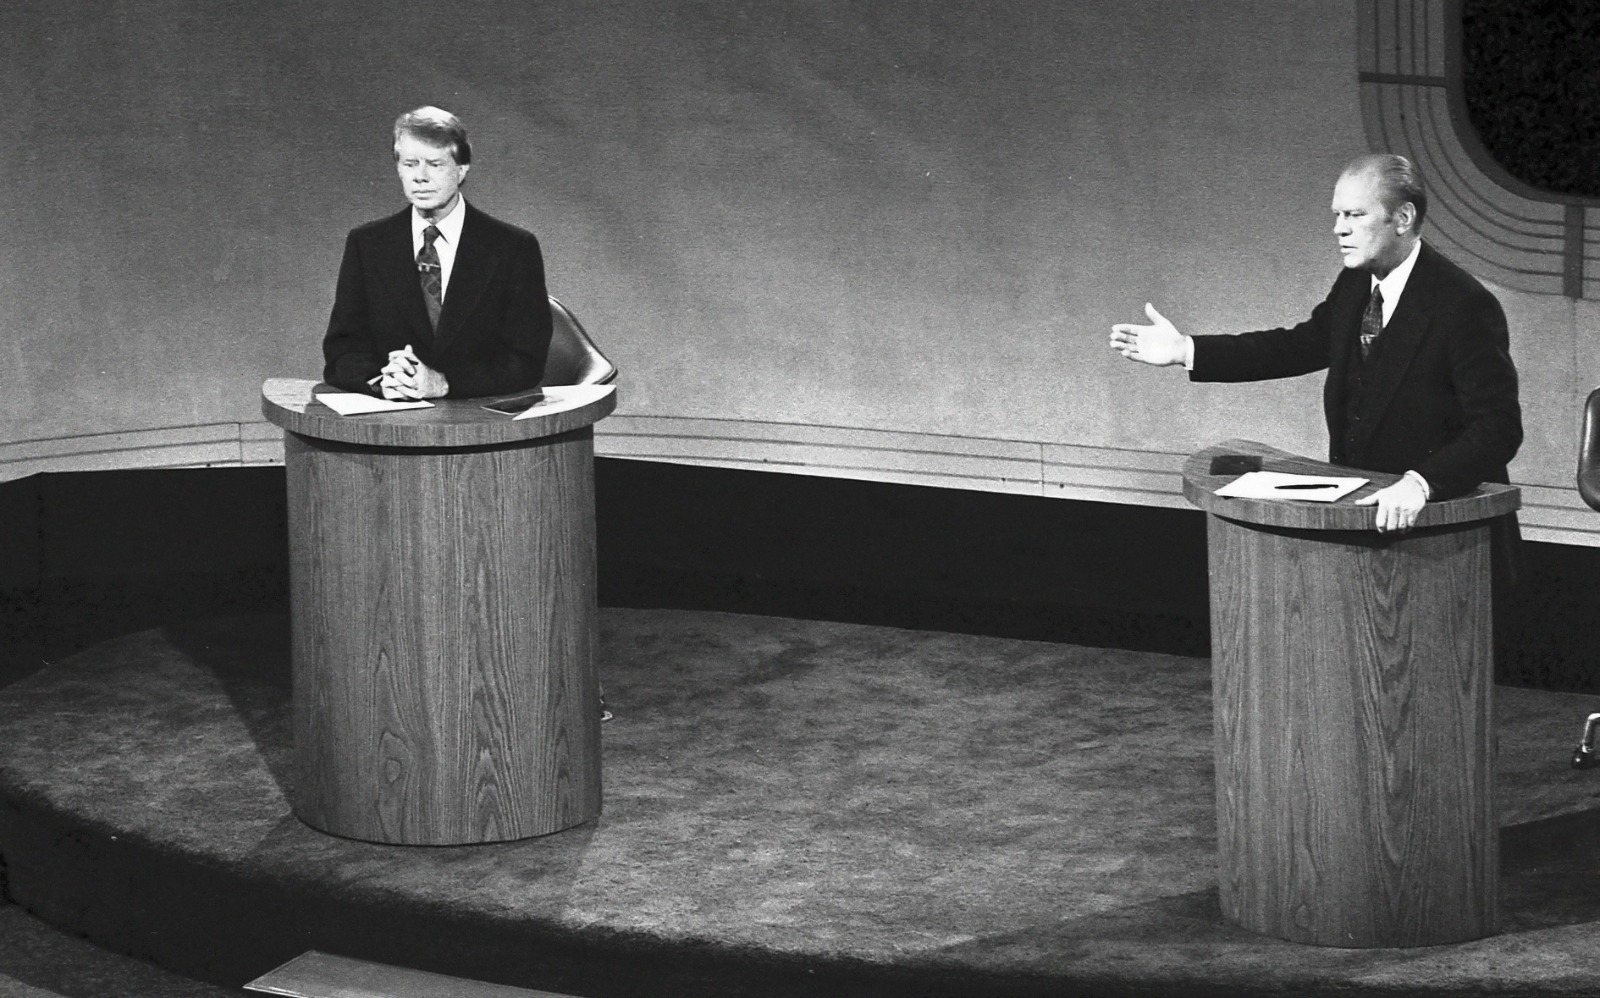 جيرالد فورد وجيمي كارتر خلال المناظرة الأولى للانتخابات الرئاسية الأمريكية في ولاية بنسلفانيا عام 1976